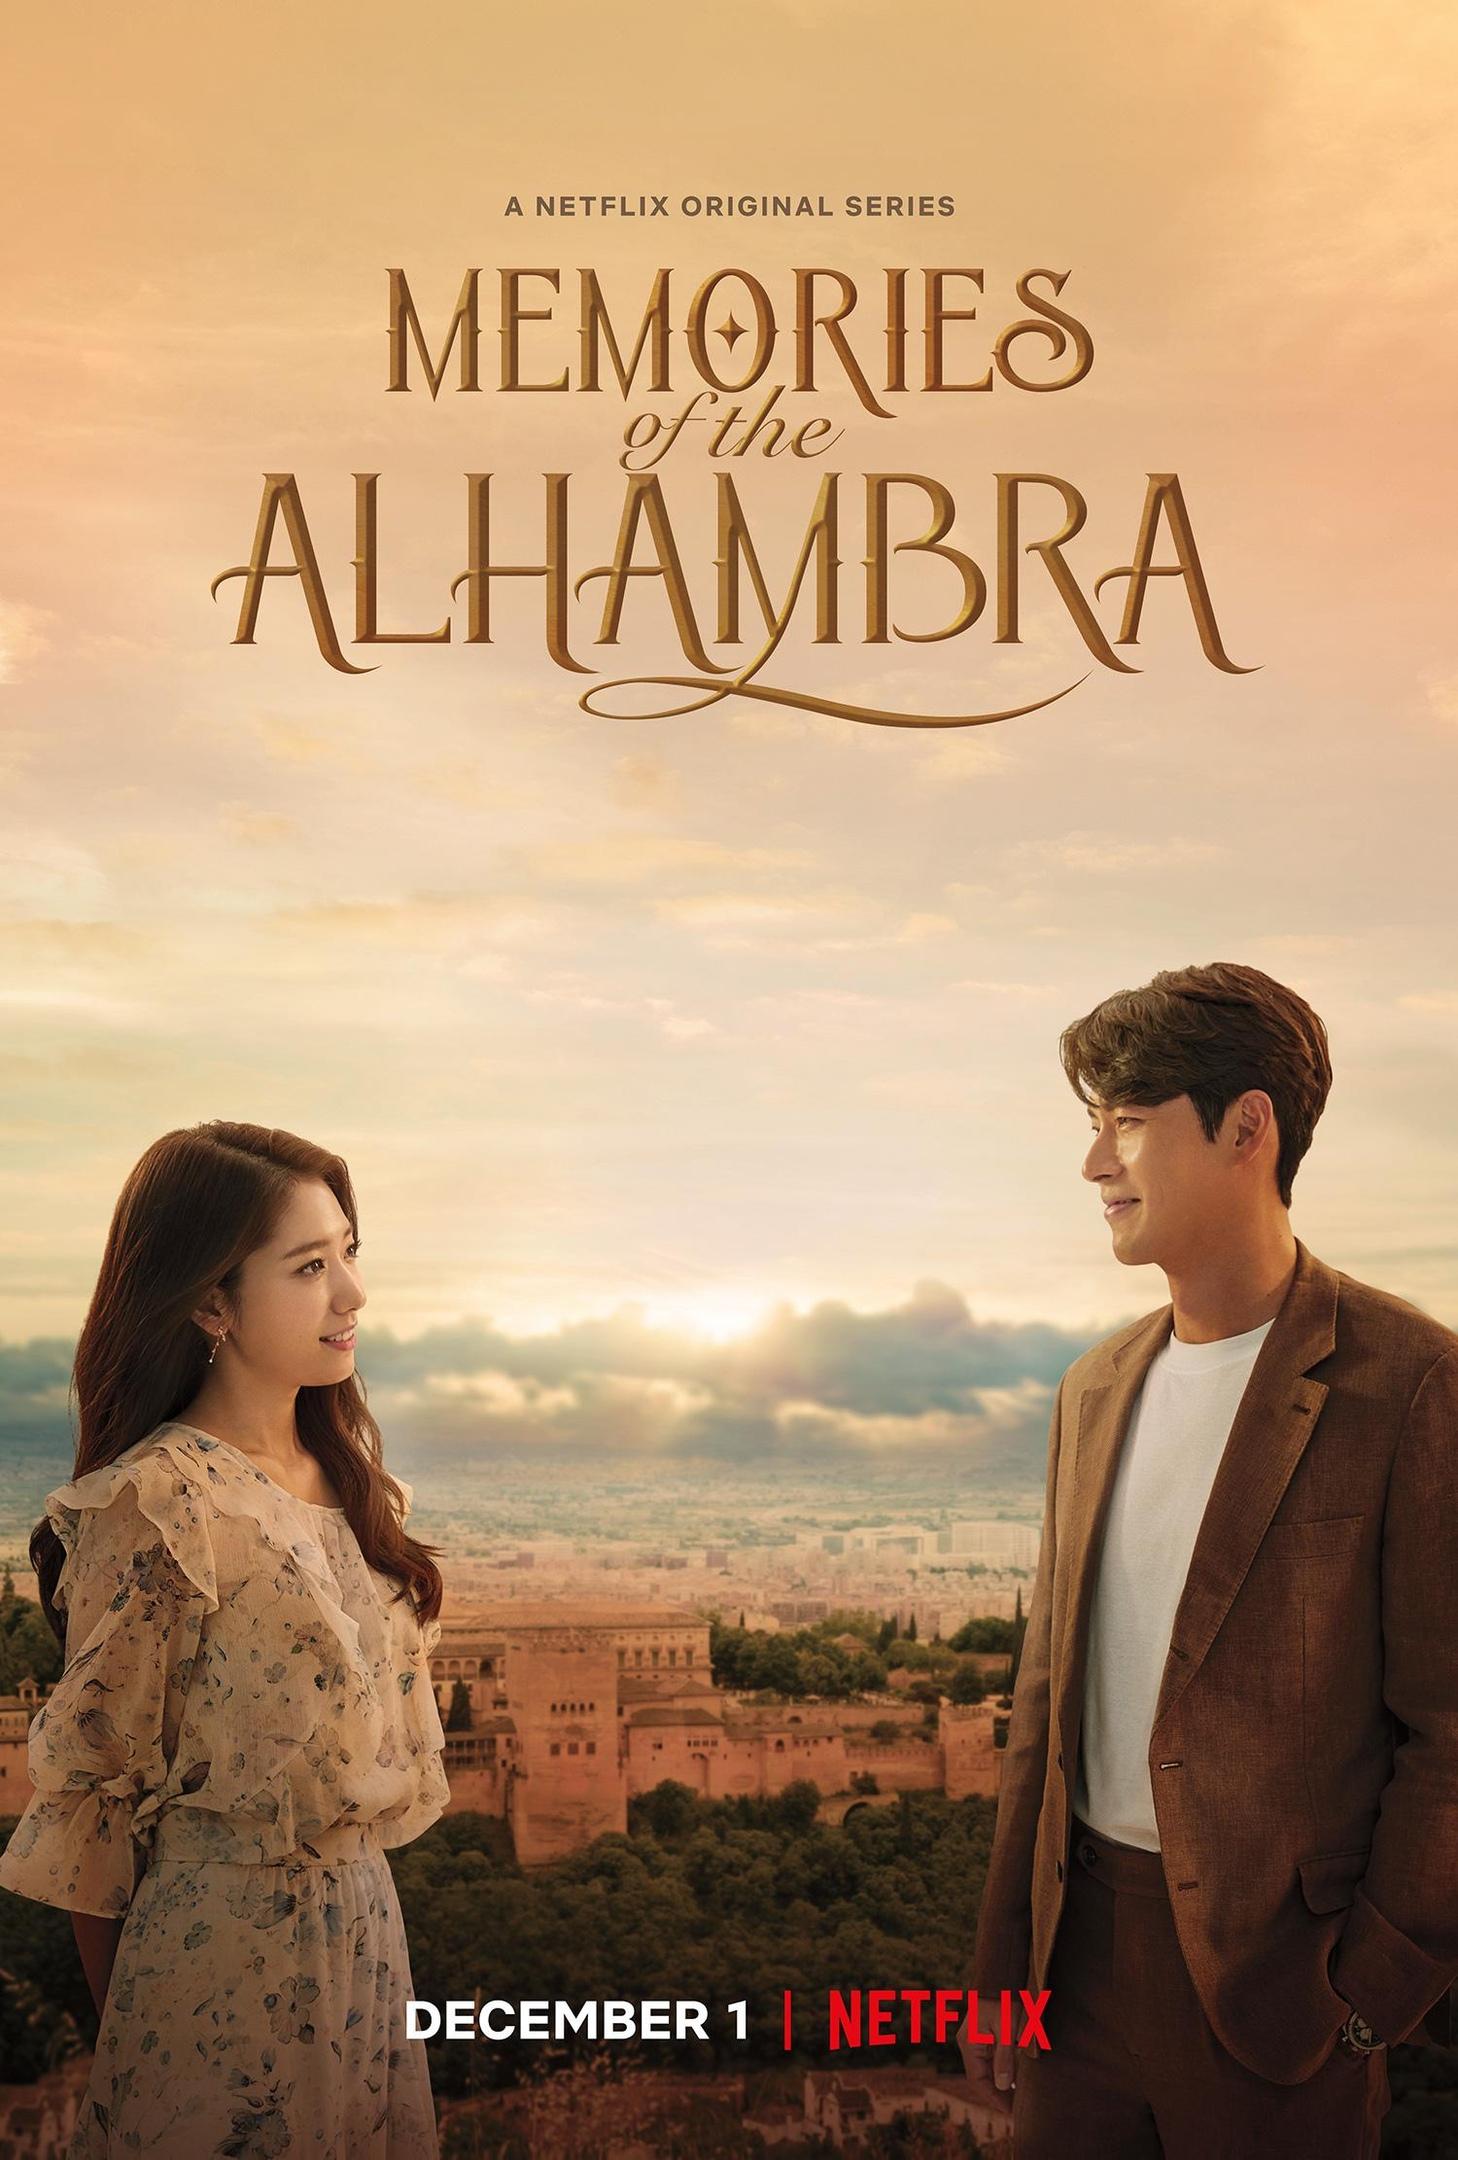 Сериал Альхамбра: Воспоминания о королевстве/Memories of the Alhambra онлайн